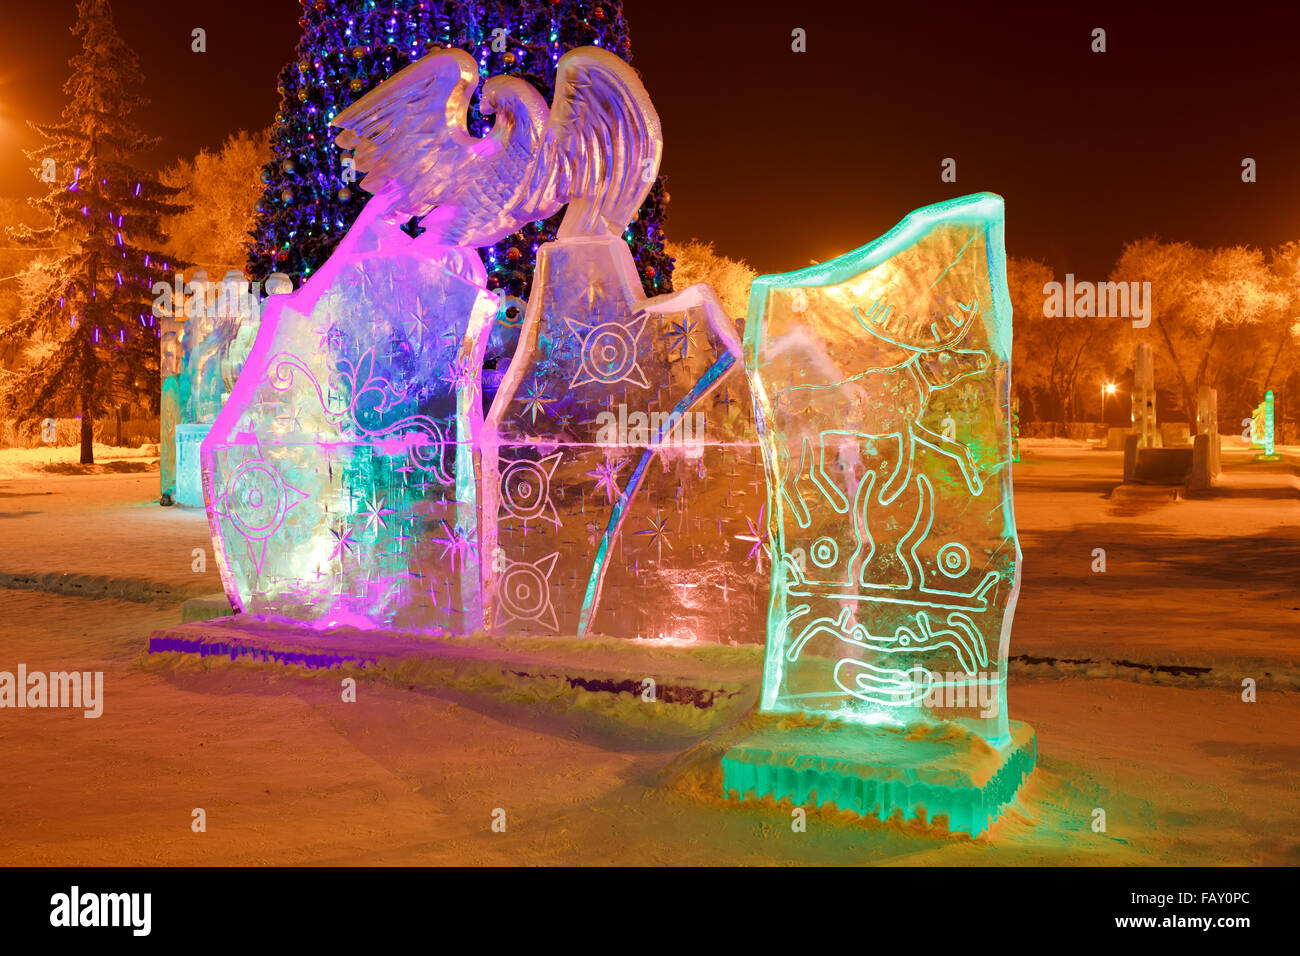 Eis-Skulptur im Stadtpark an Weihnachten und Silvester mit Höhlenmalereien von Hirschen, Fabelwesen, solar Schilder, Petroglyphen. Nachts beleuchtet. Stockfoto